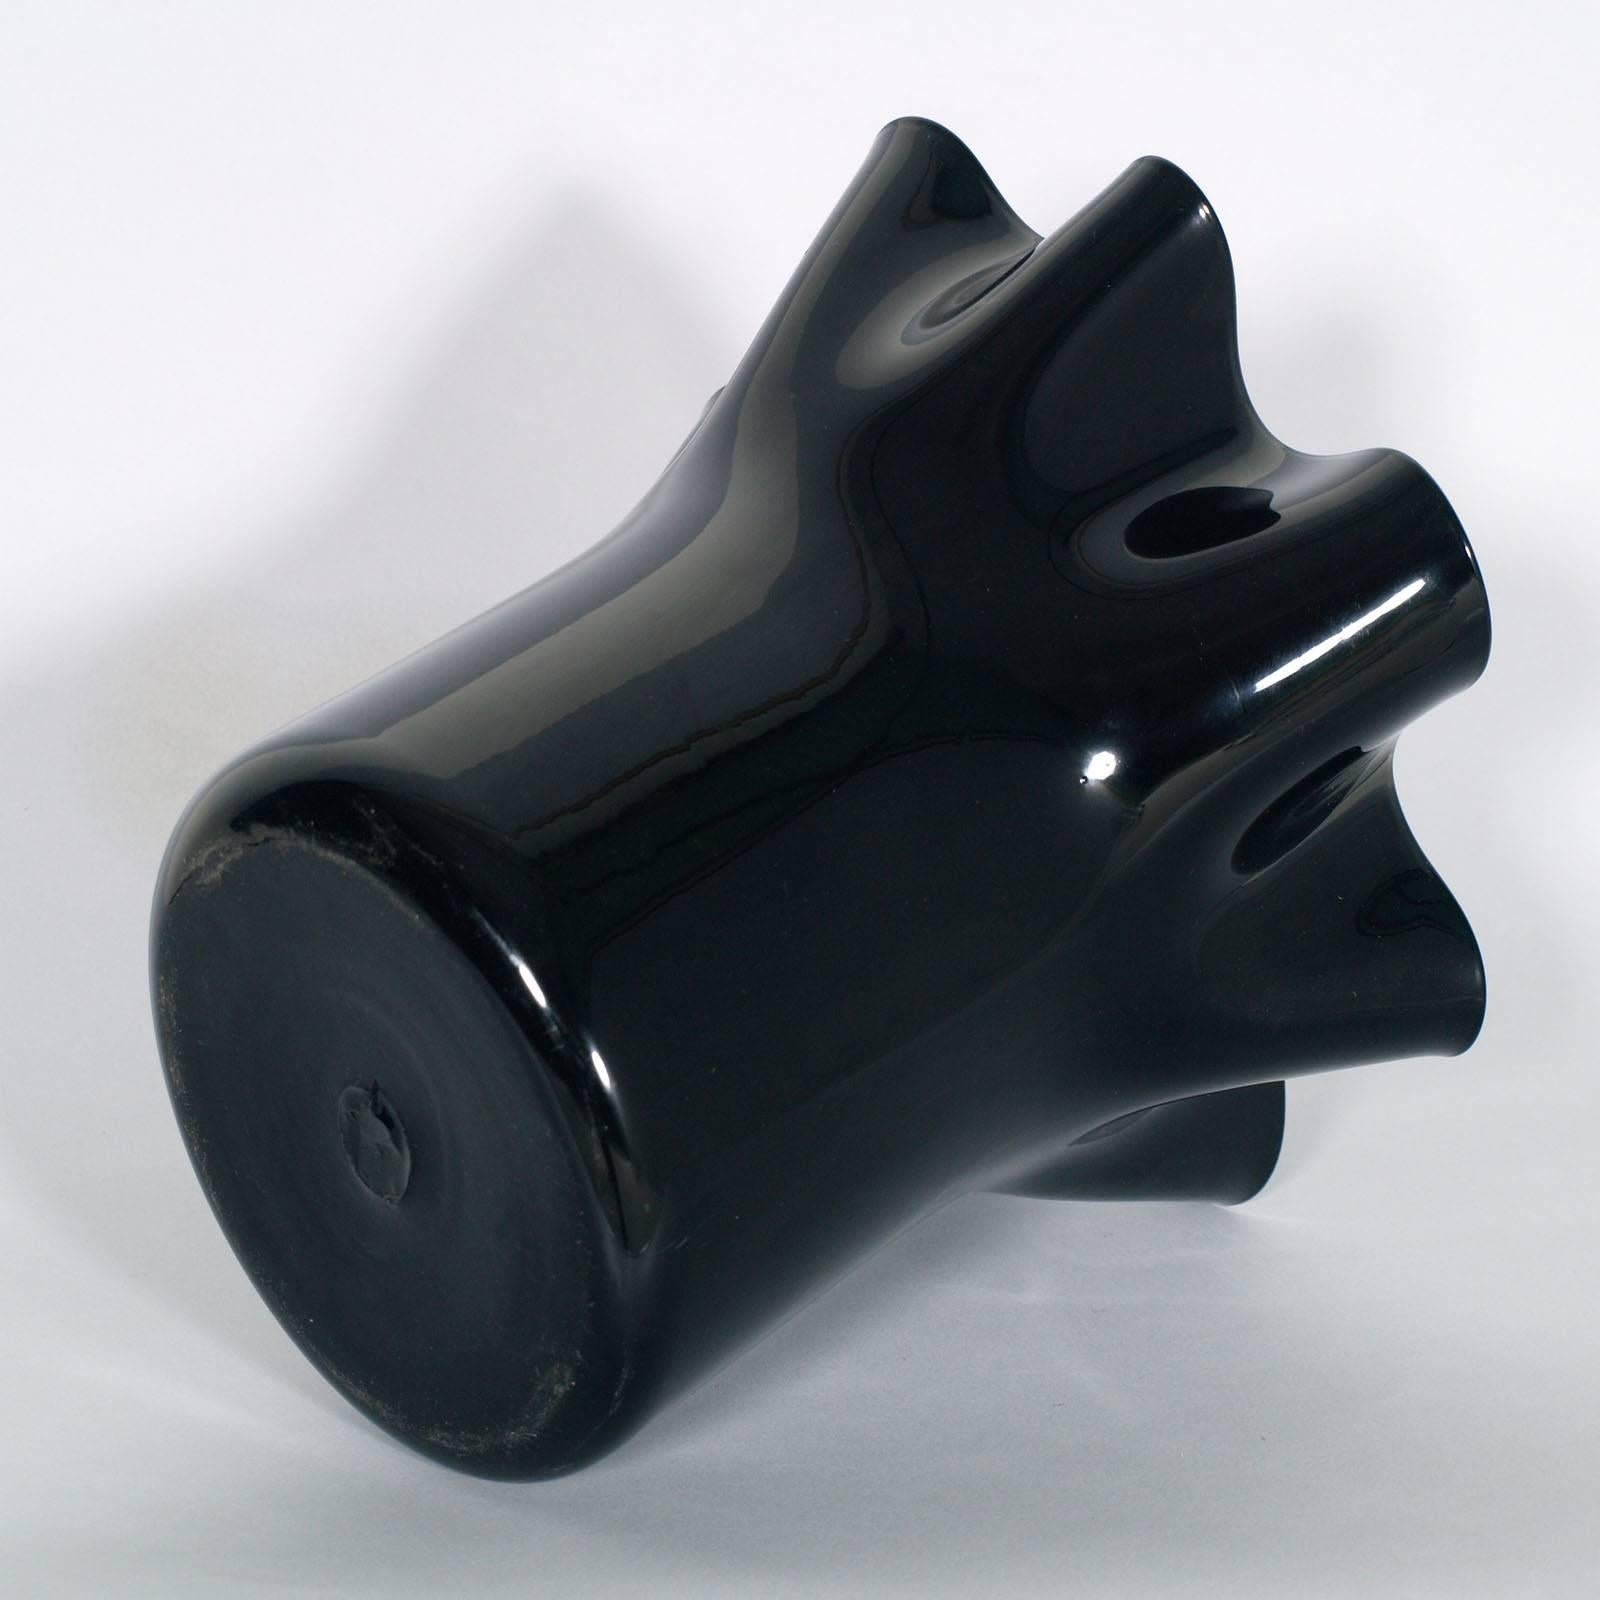 Black vase Sergio Asti style for Venini in blown Murano glass, circa 1960s.

Measure cm: H 28 Diameter 30.